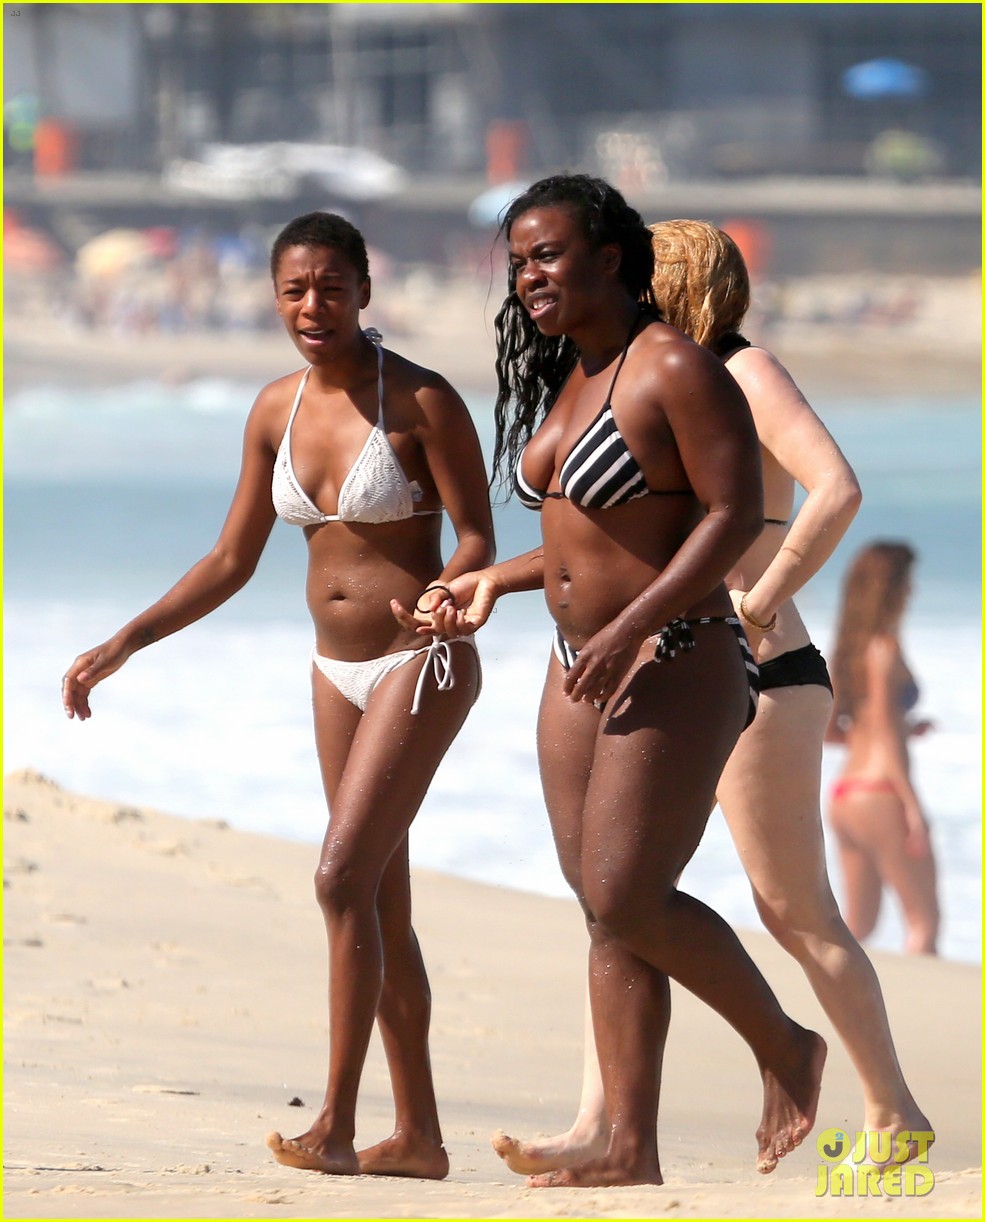 Uzo Aduba and Samira Wiley show off their bikini bodies while enjoying a da...